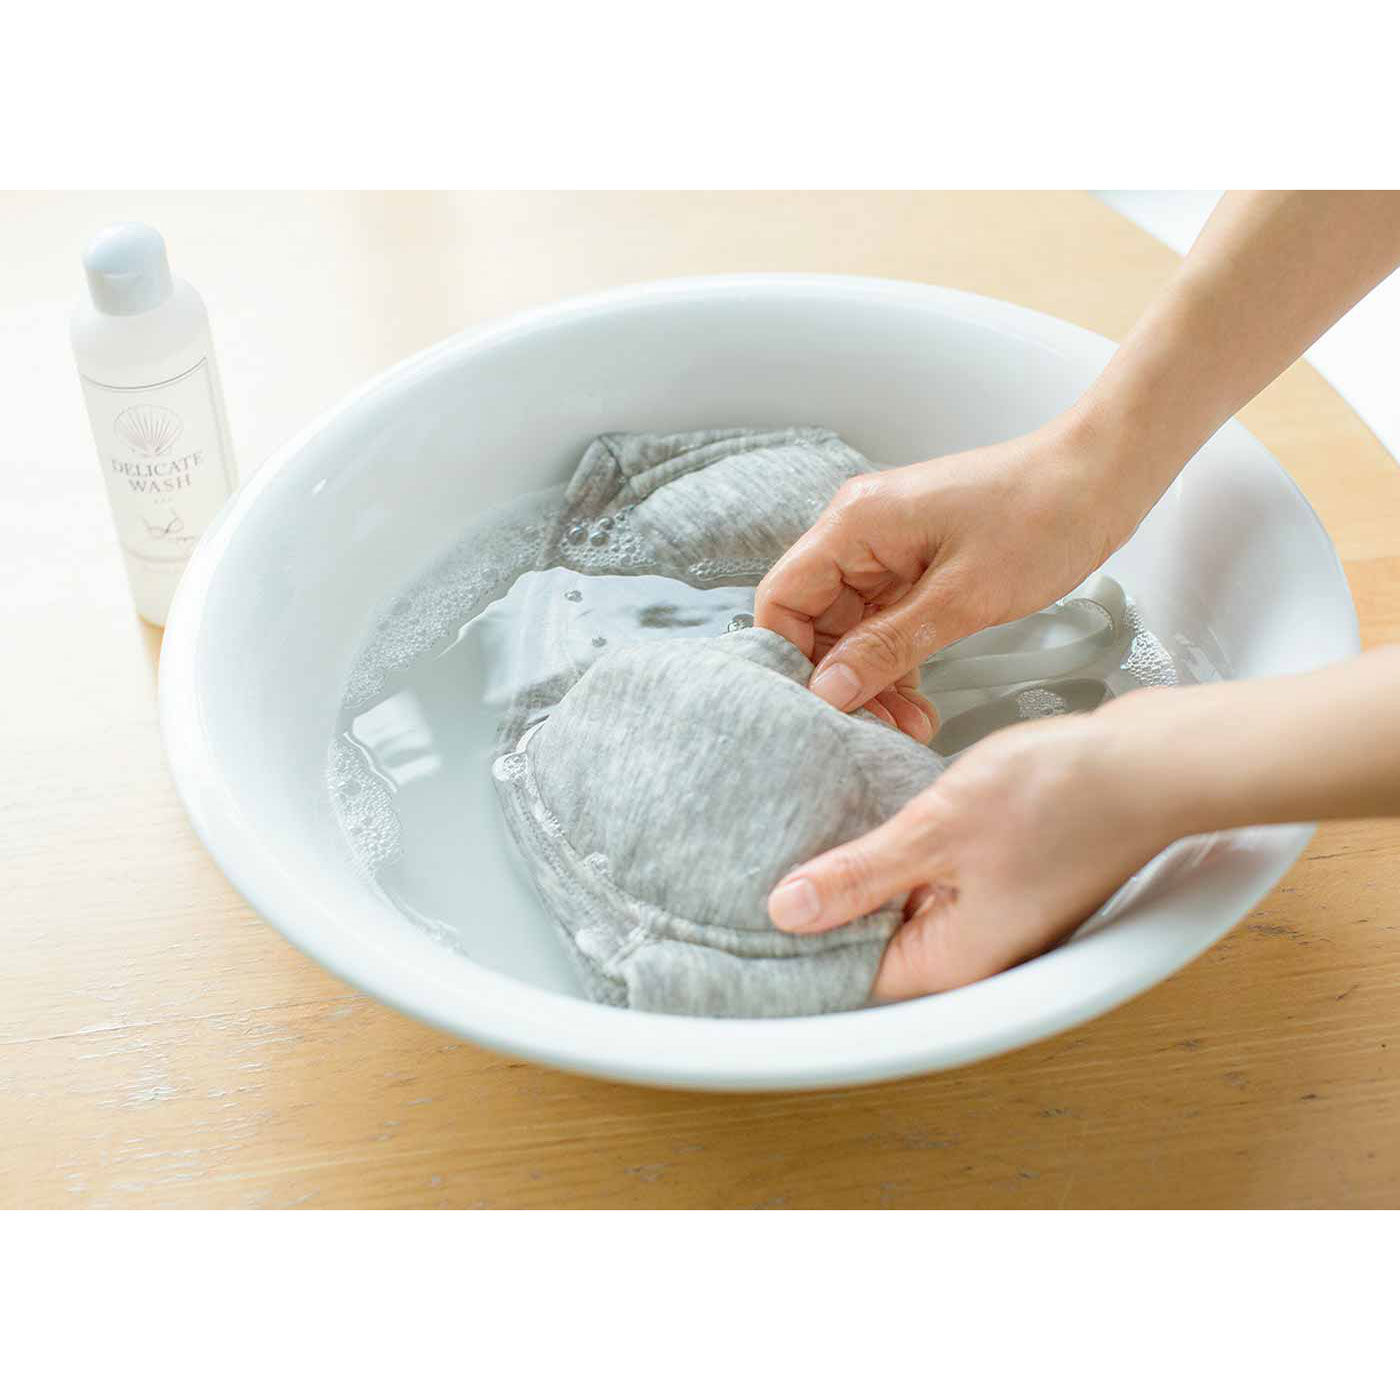 Real Stock|ホタテの貝殻生まれ つけ置き洗いですっきりきれい ランジェリー用洗剤|ブラジャーやショーツにも使用できます。